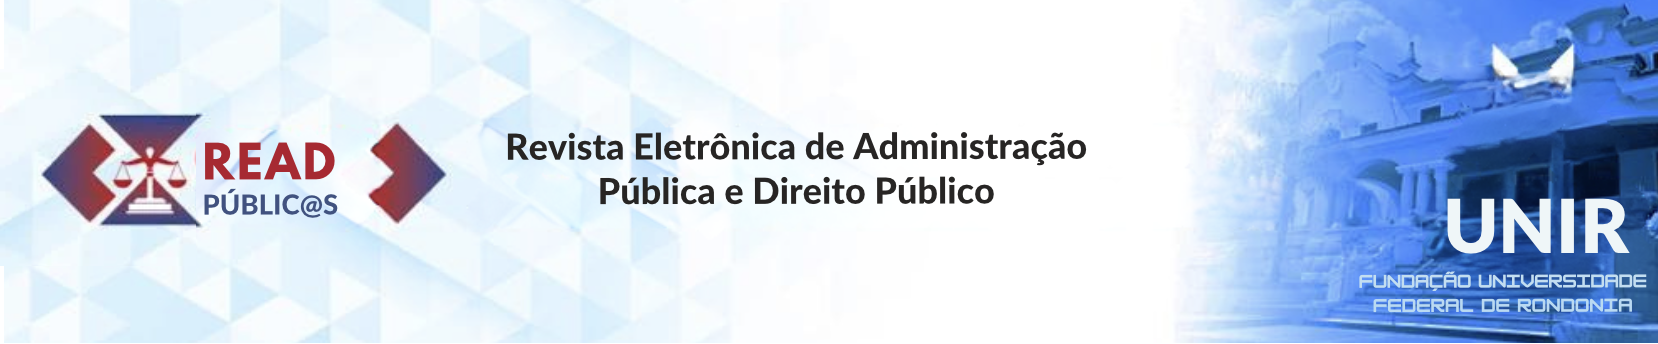 Revista Eletrônica de Administração Pública e Direito Público (READ-Public@s)